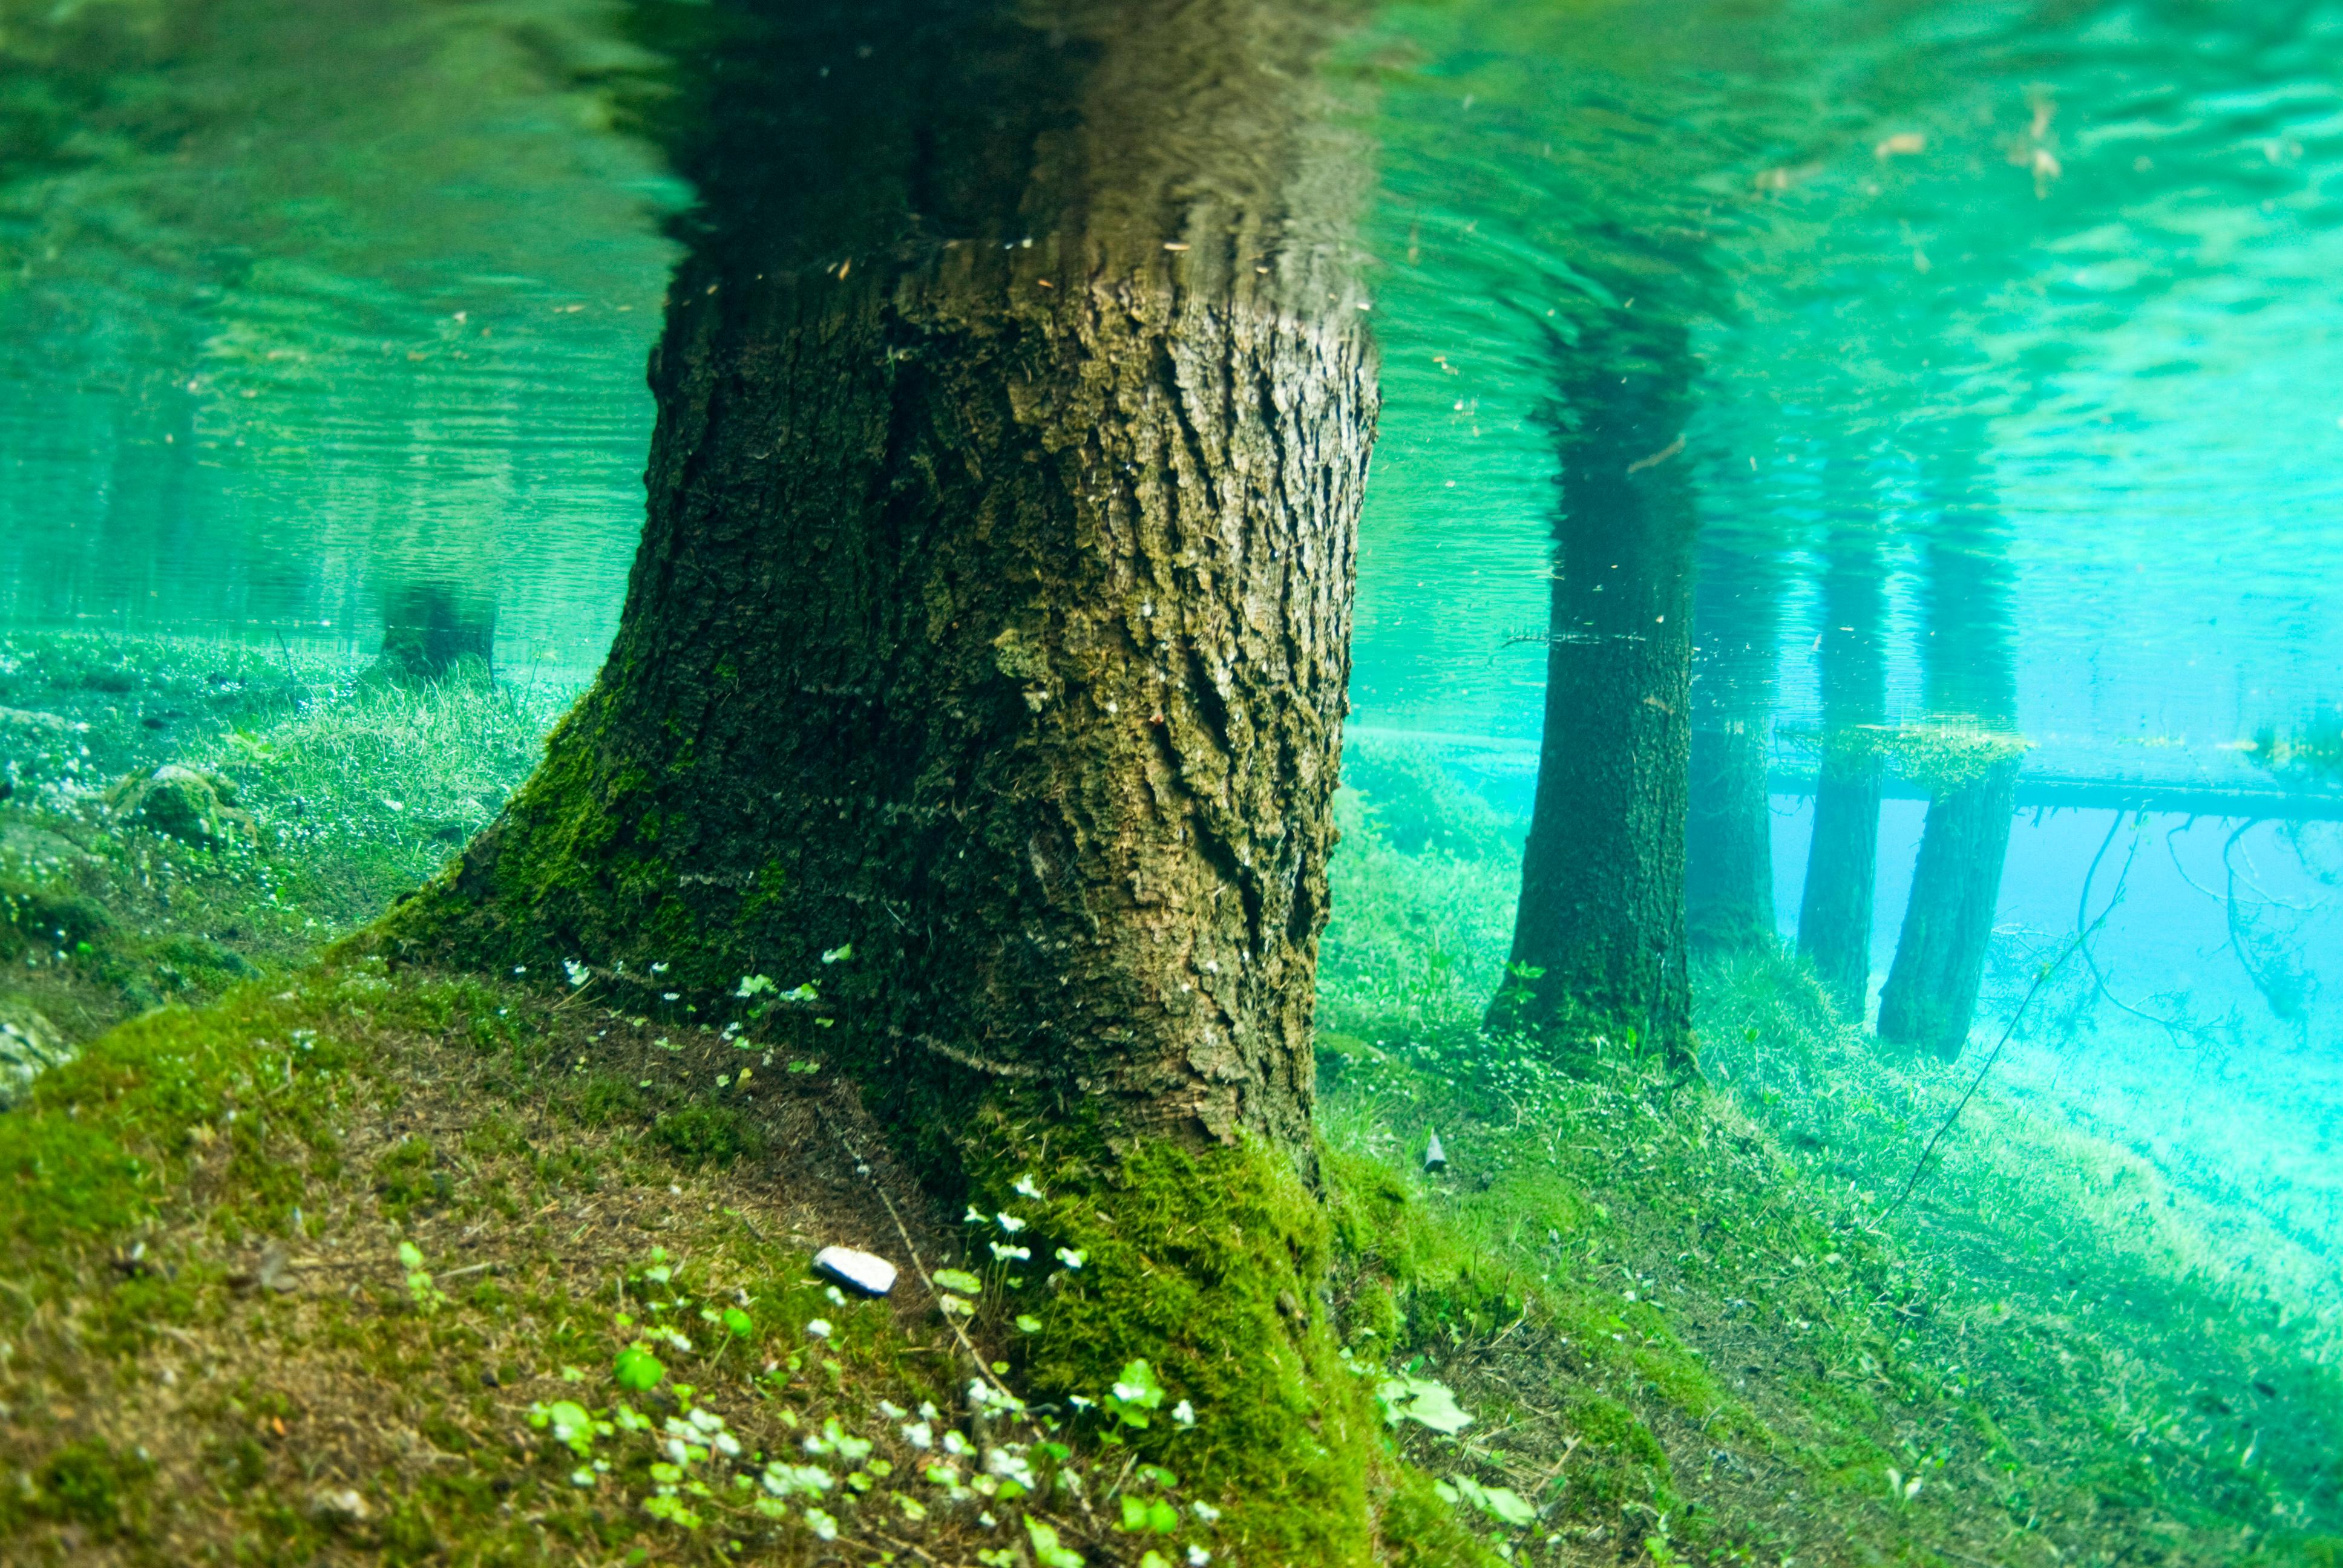 Лес затопленный водой. Австрия зеленое озеро подводный парк. Озеро Грюнер. Грюнер-зе озеро в Австрии. Парк Австралия зеленое озеро.